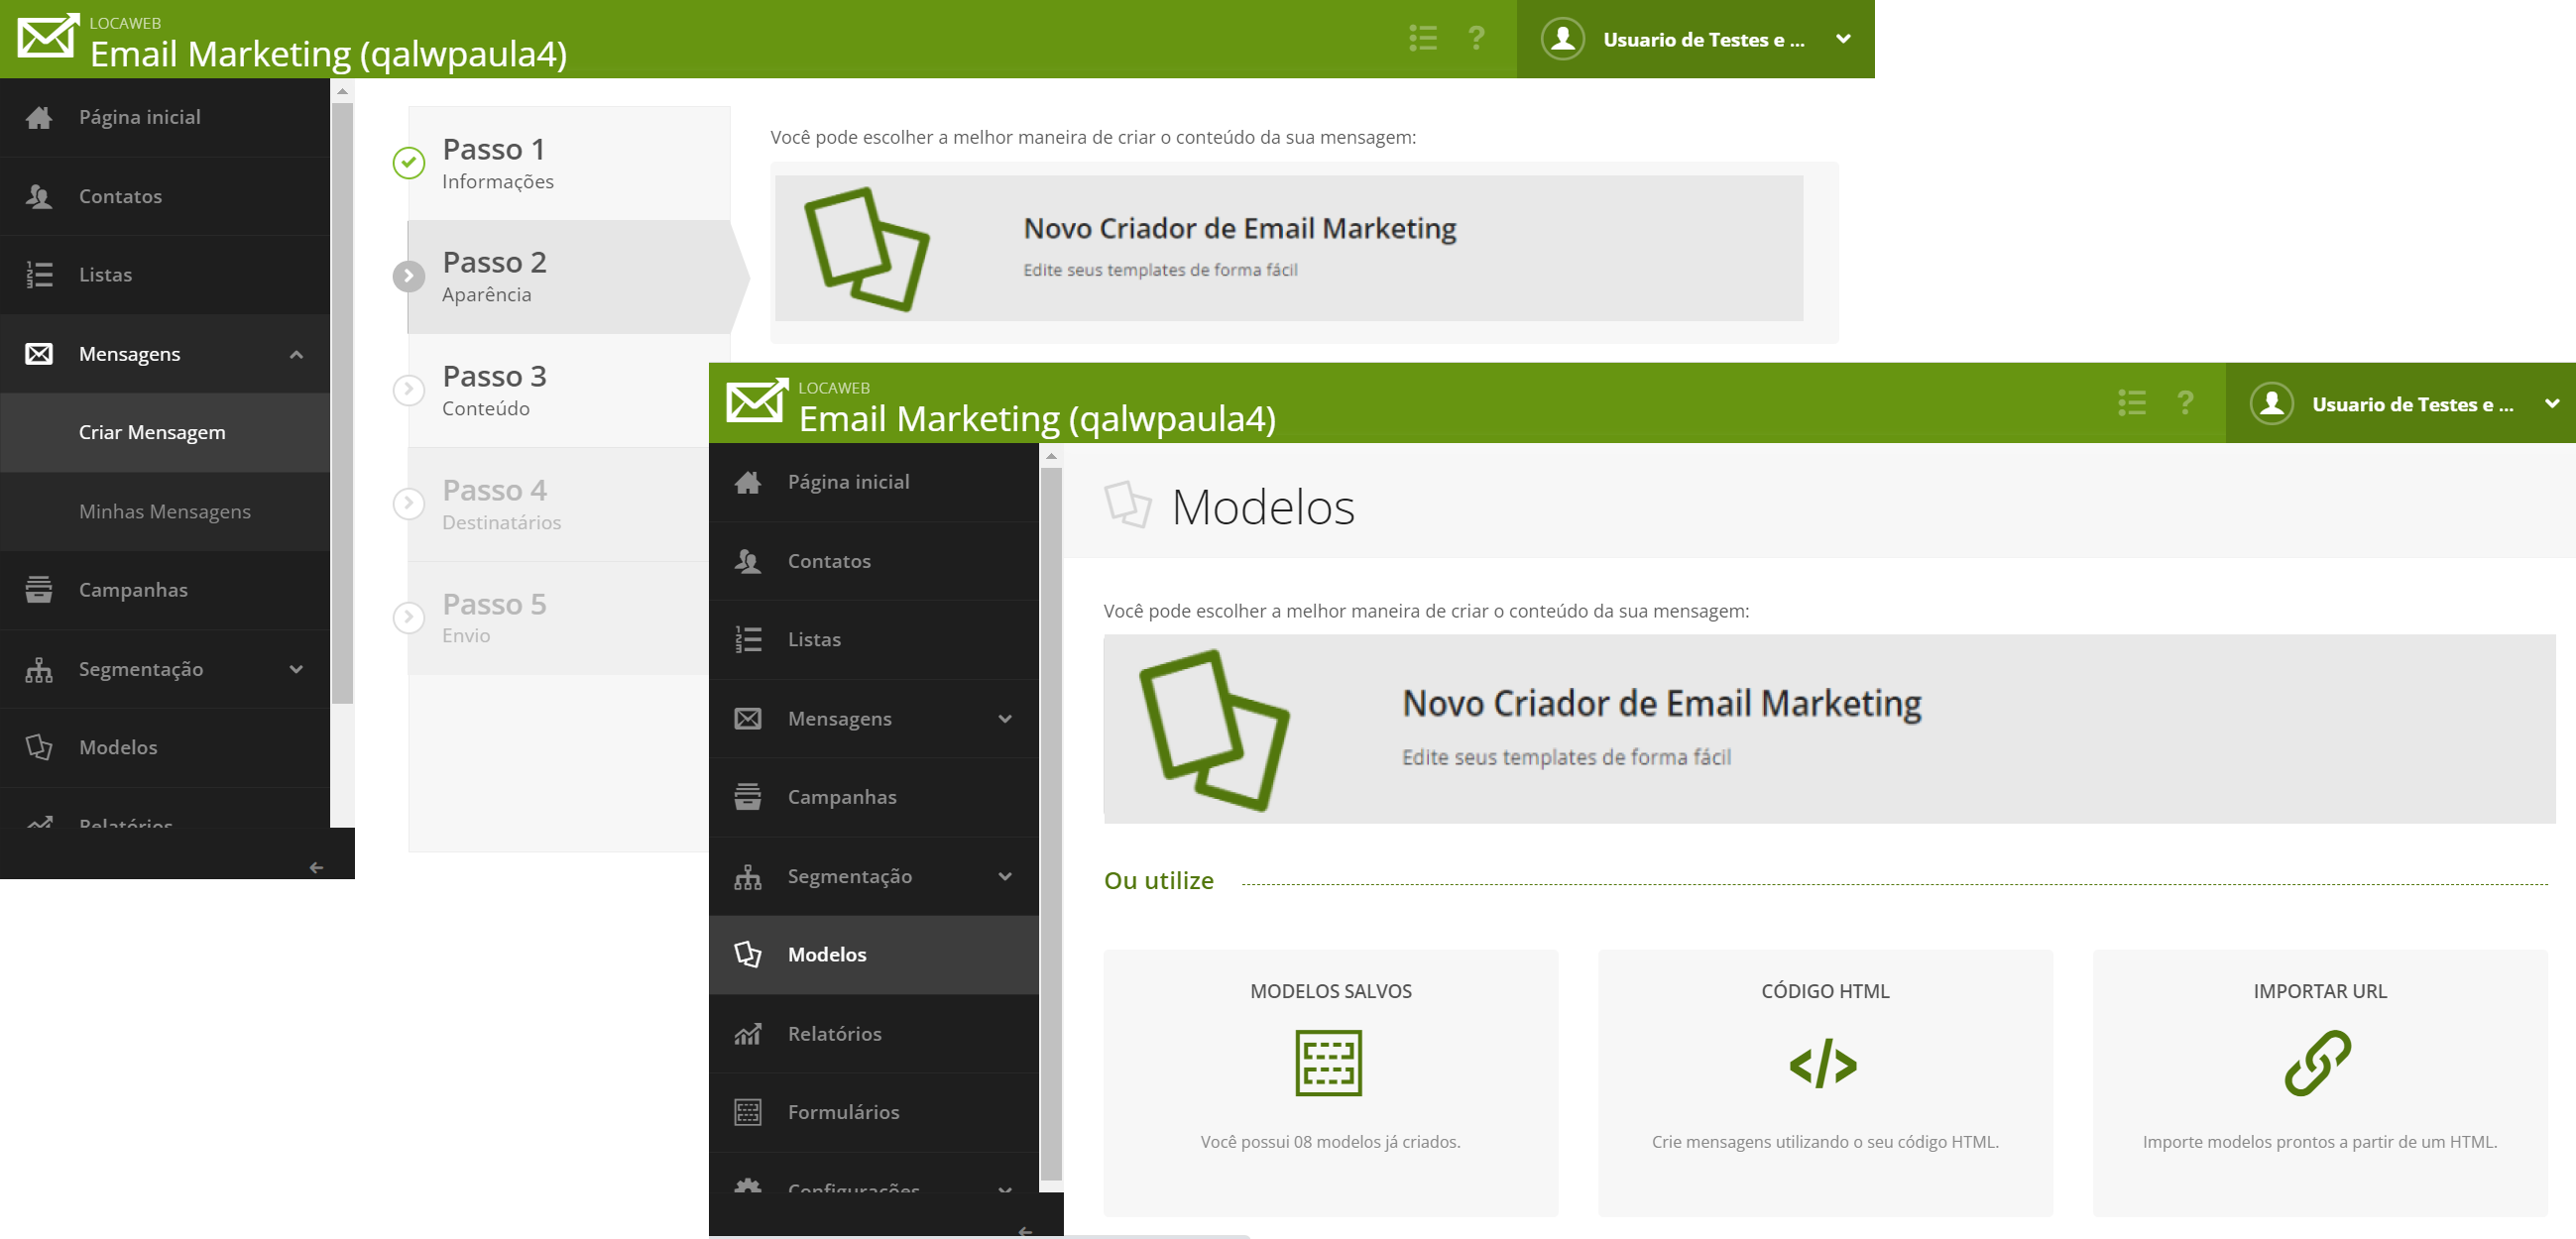 [Alt text: duas imagens mostrando as interfaces do painel de Email Marketing, destacando o menu lateral e as abas chamadas “Criar Mensagem” e “Modelos”.]